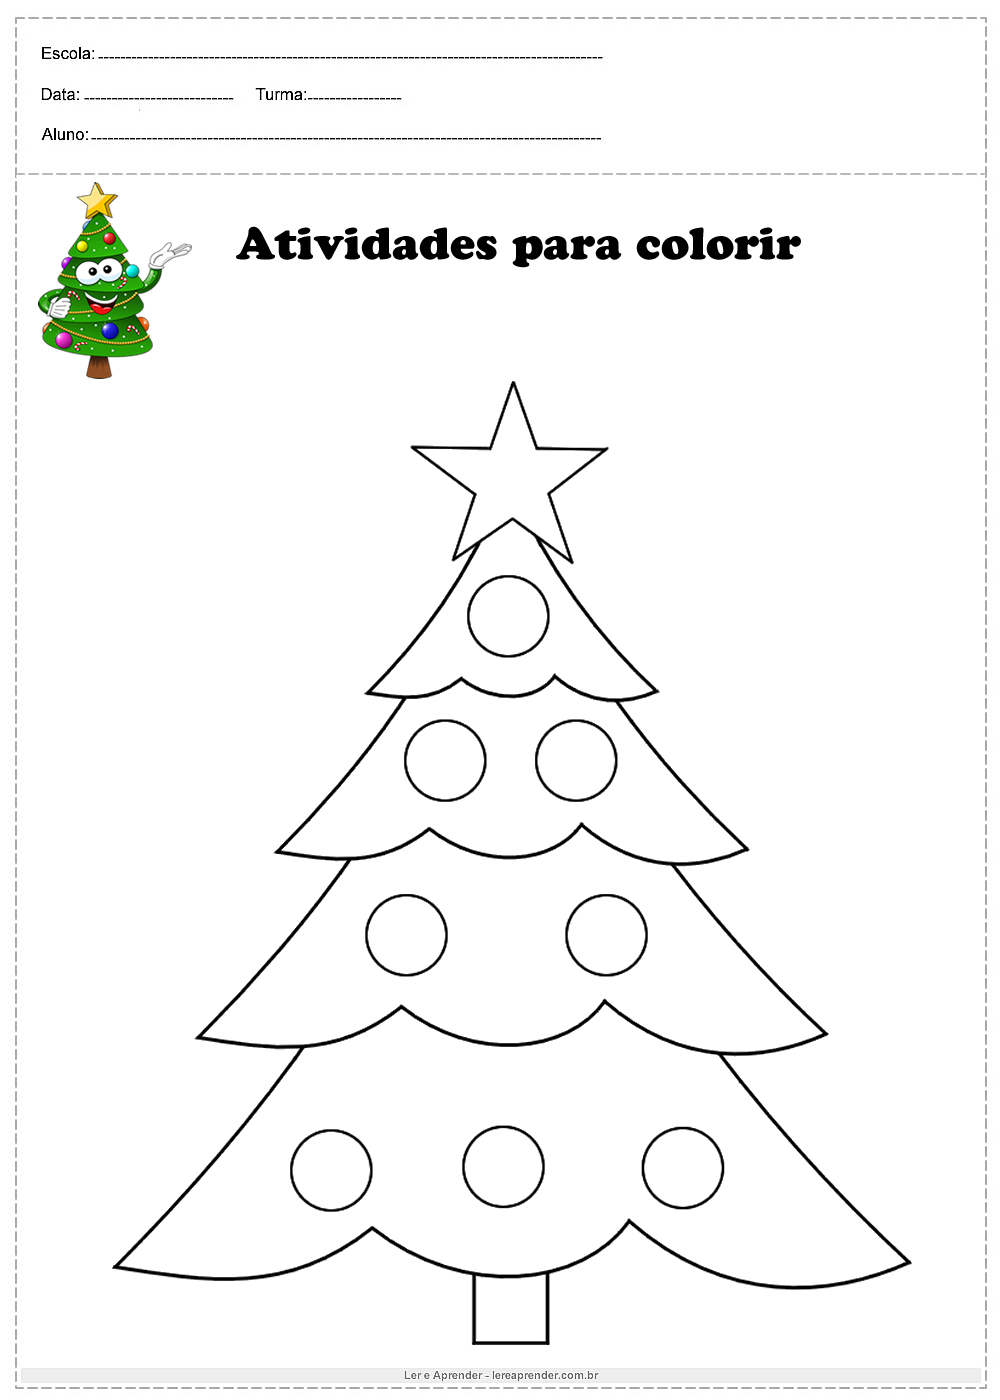 Vamos pintar a árvore de natal - Ler e Aprender